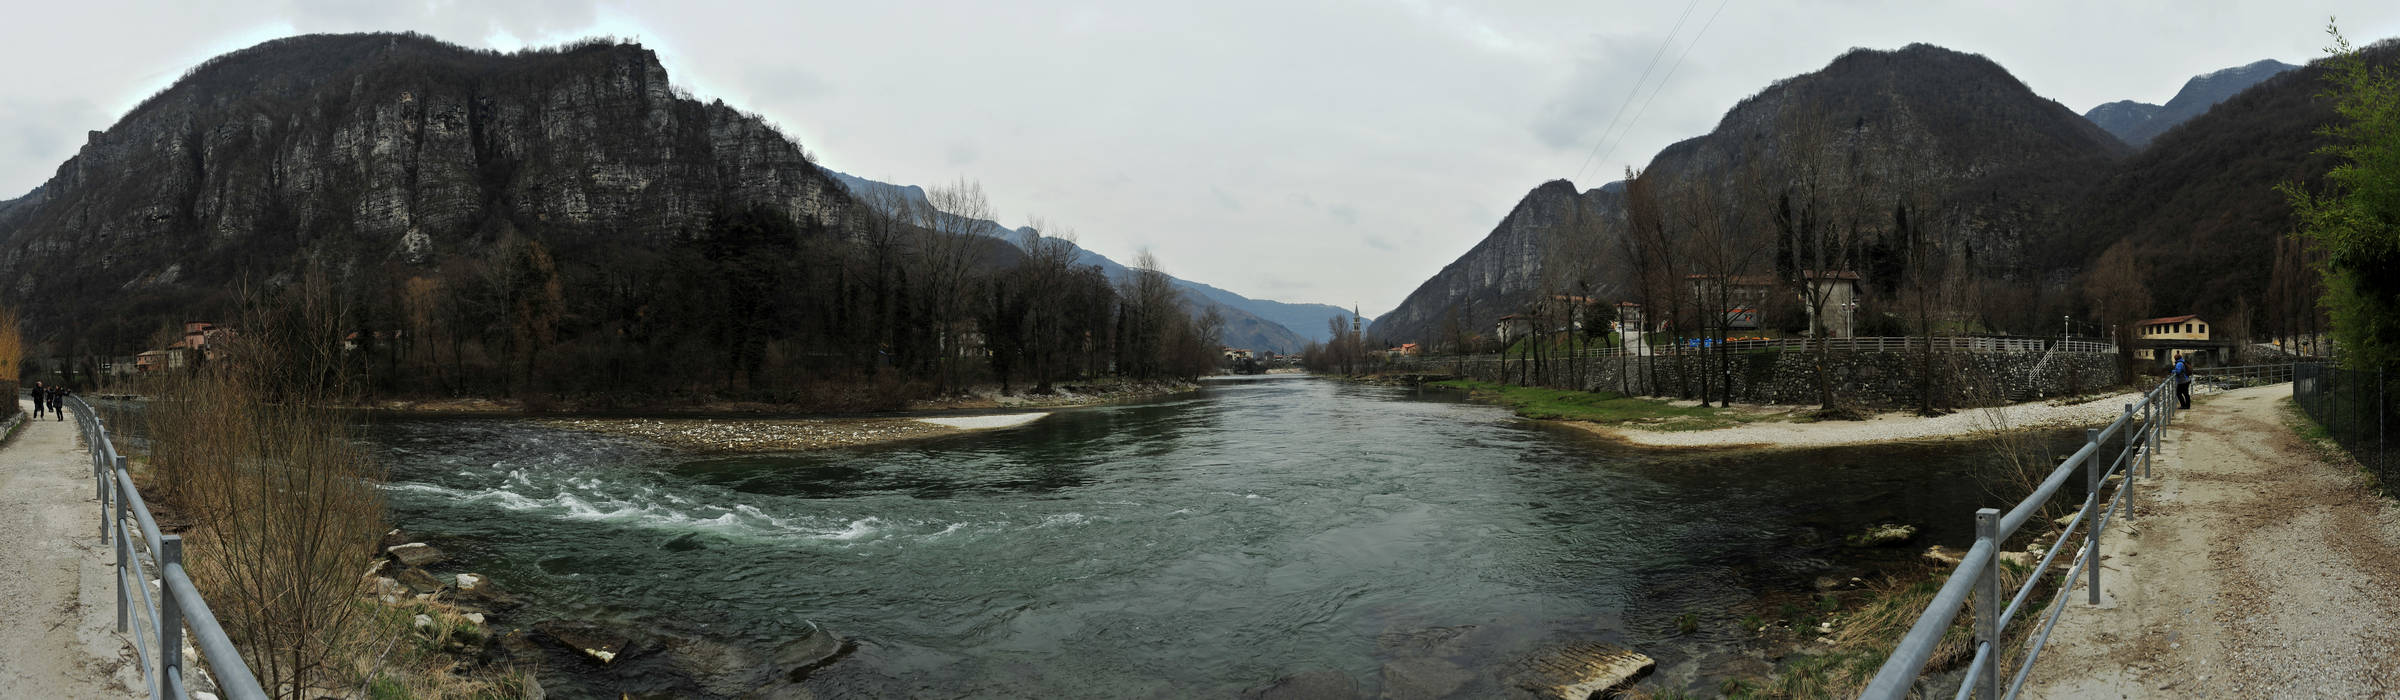 Valstagna : il fiume Brenta e l'Oliero a Oliero di Valstagna, Canal di